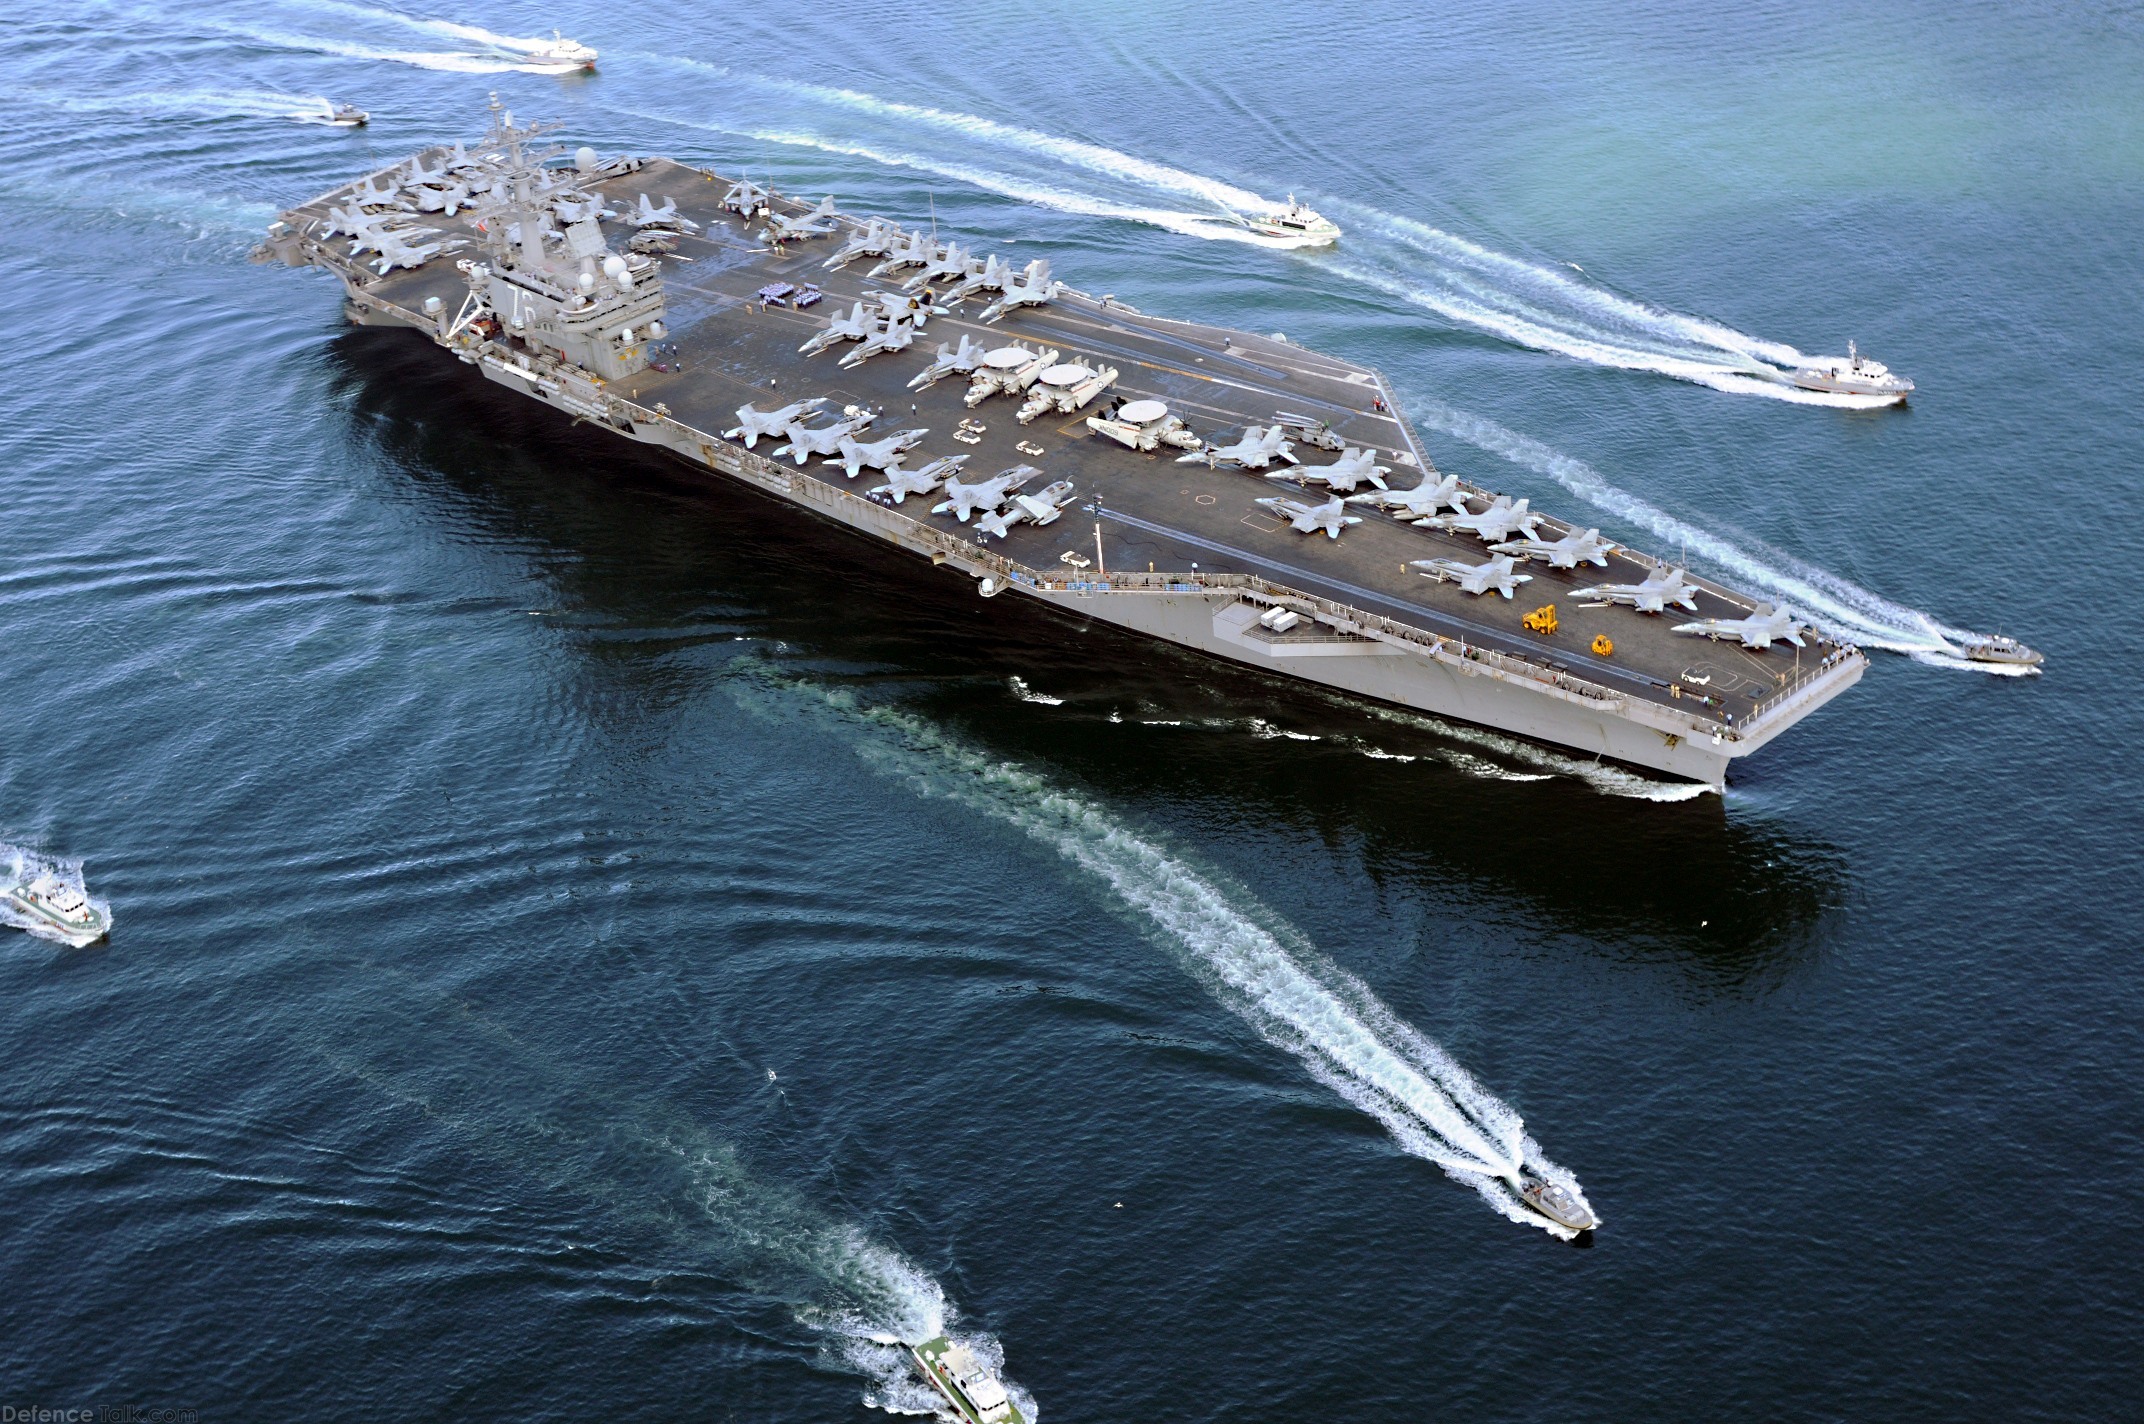 USS Ronald Reagan CVN 76 Aircraft Carrier